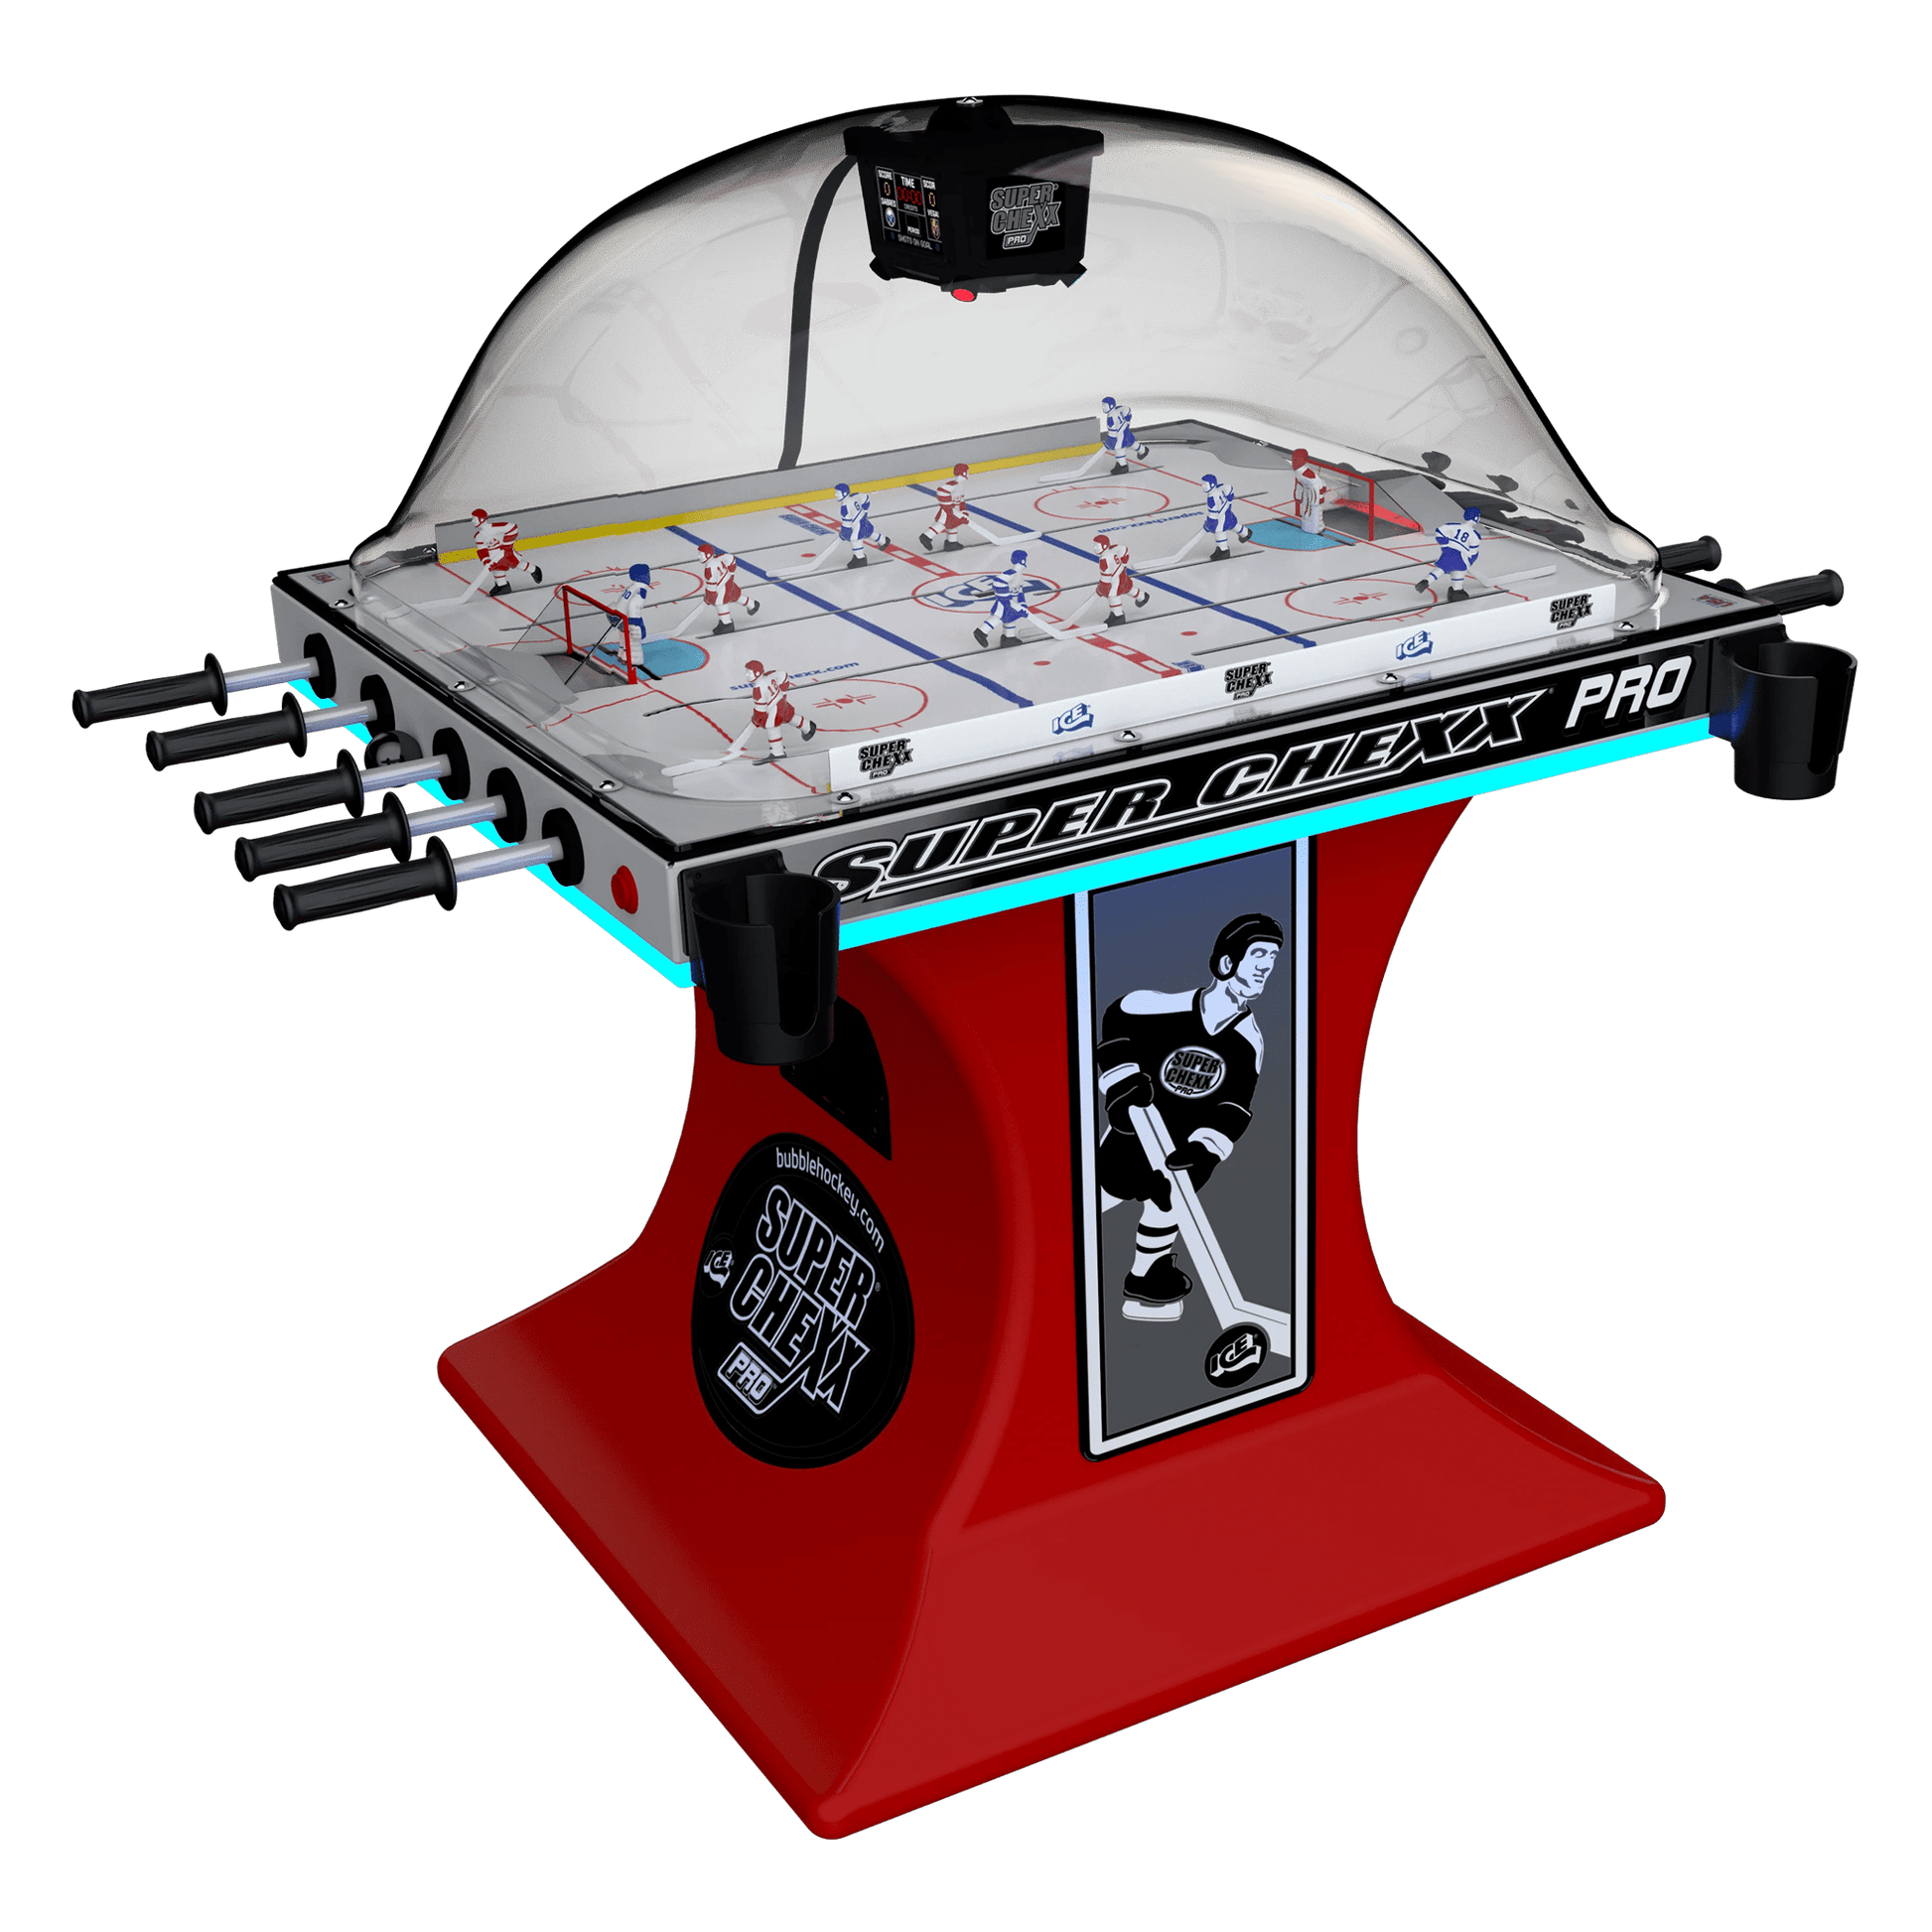 Super Chexx PRO® Arcade Innovative Concepts in Entertainment   